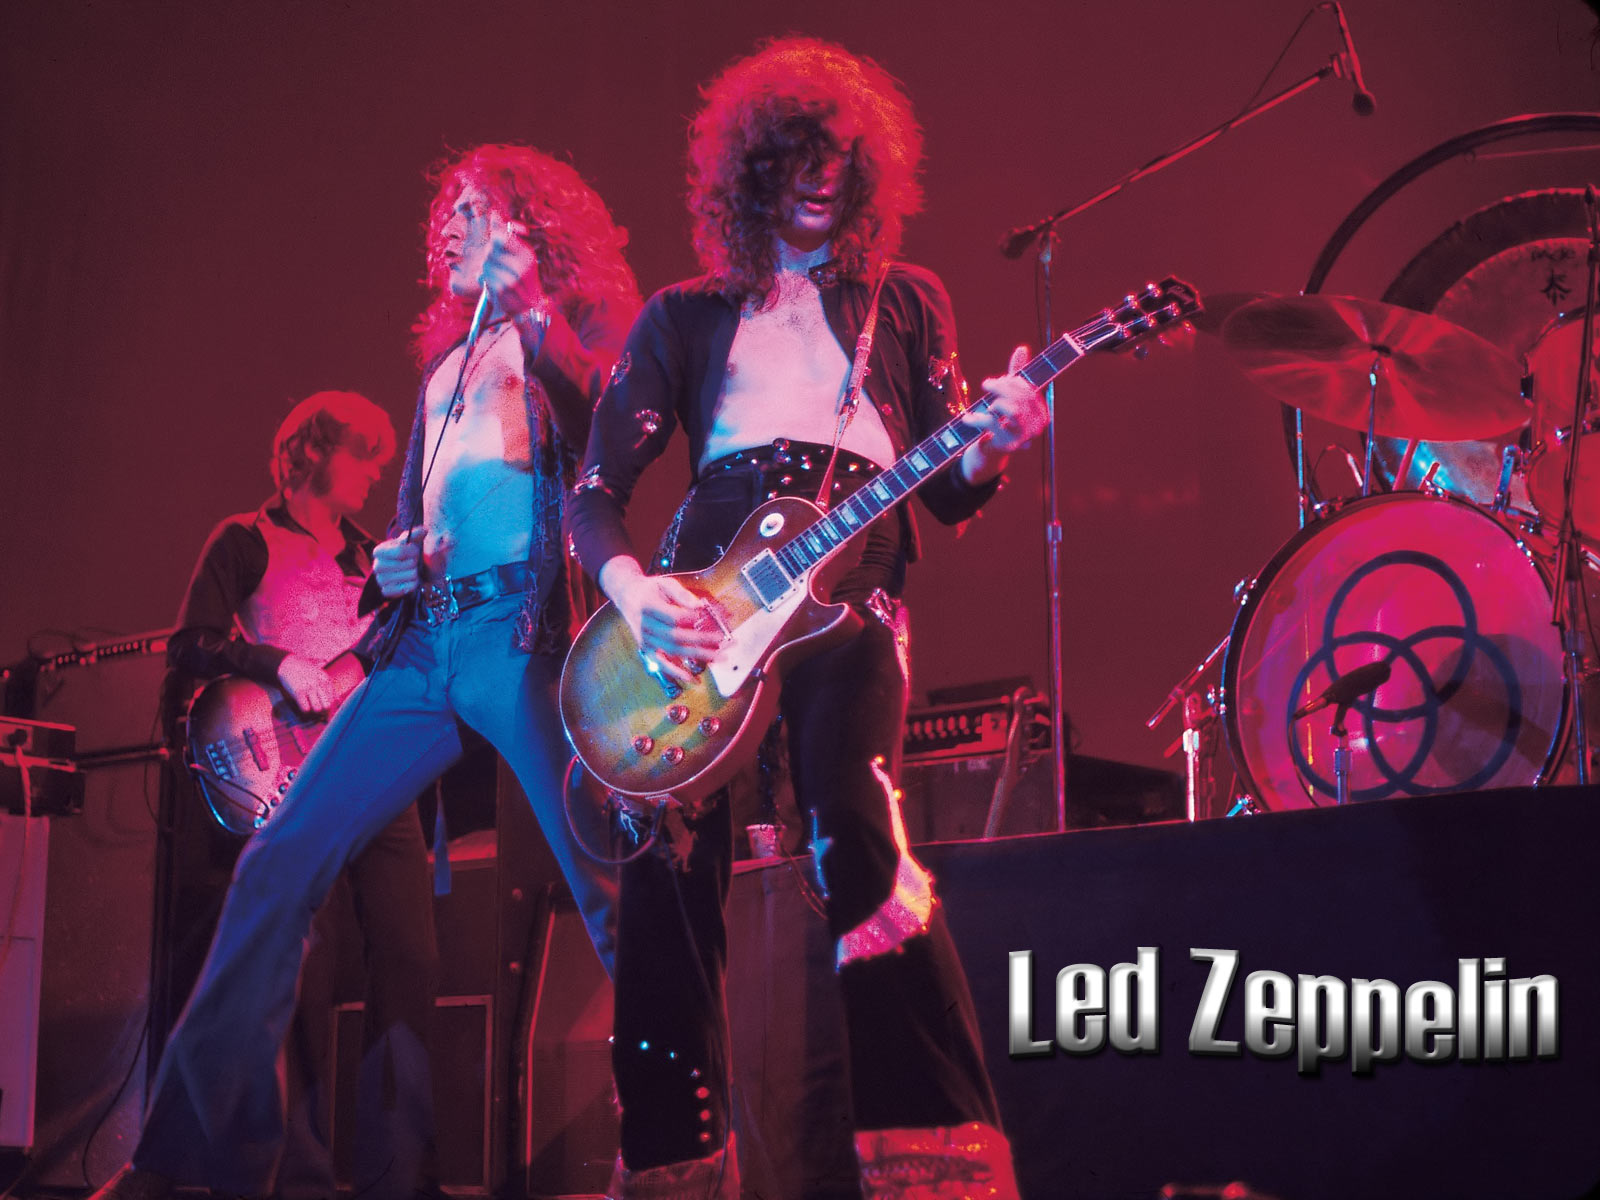 Best Led Zeppelin Photo | Wallpaperholic1600 x 1200